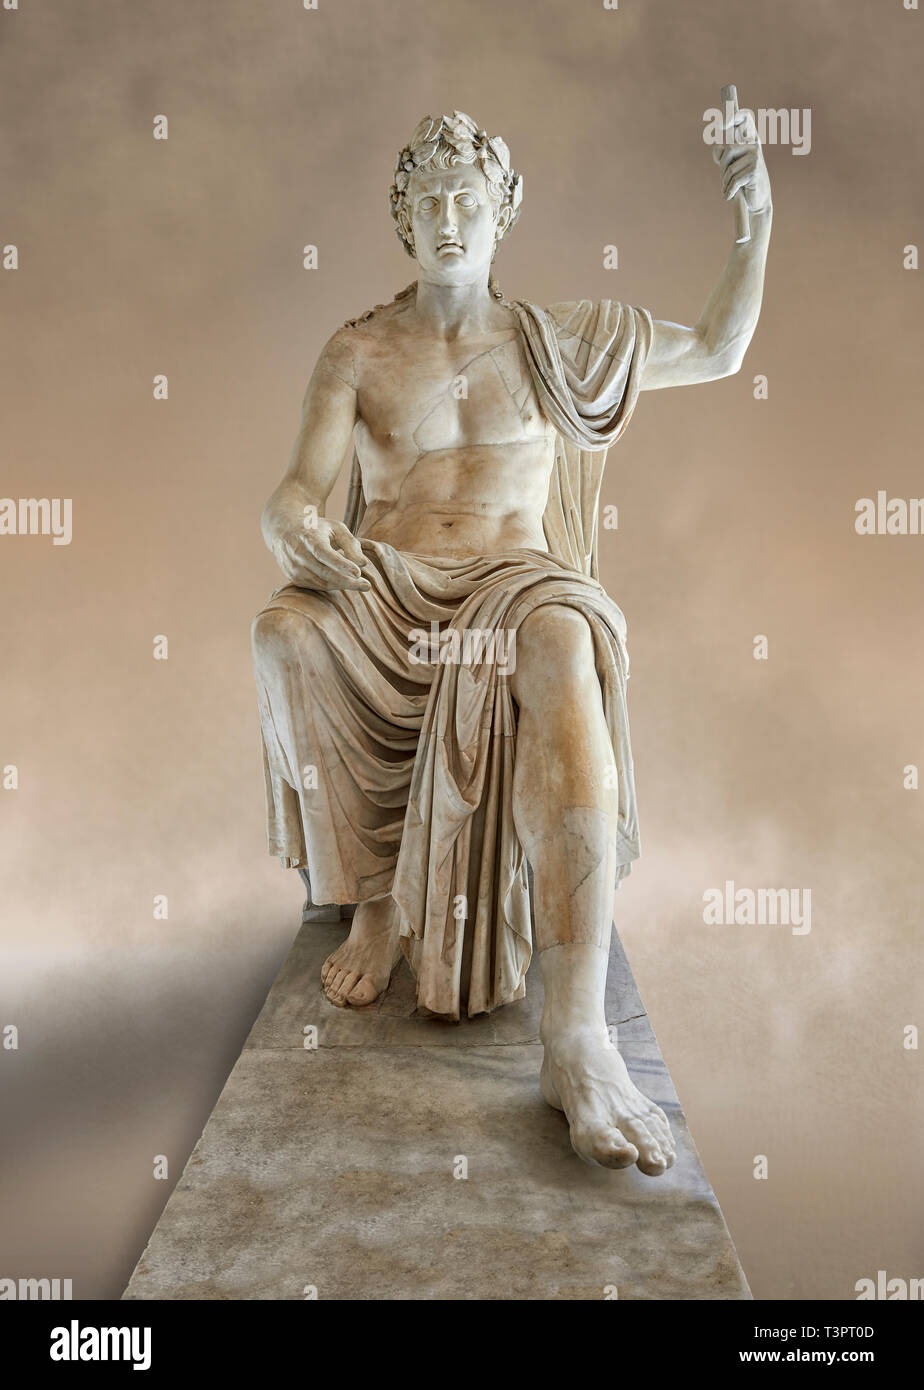 Romano asentado staue colosal de Augusto César, de mármol blanco, de finales del primer siglo, B.C, inv 6040, Museo Arqueológico Nacional de Nápoles Foto de stock